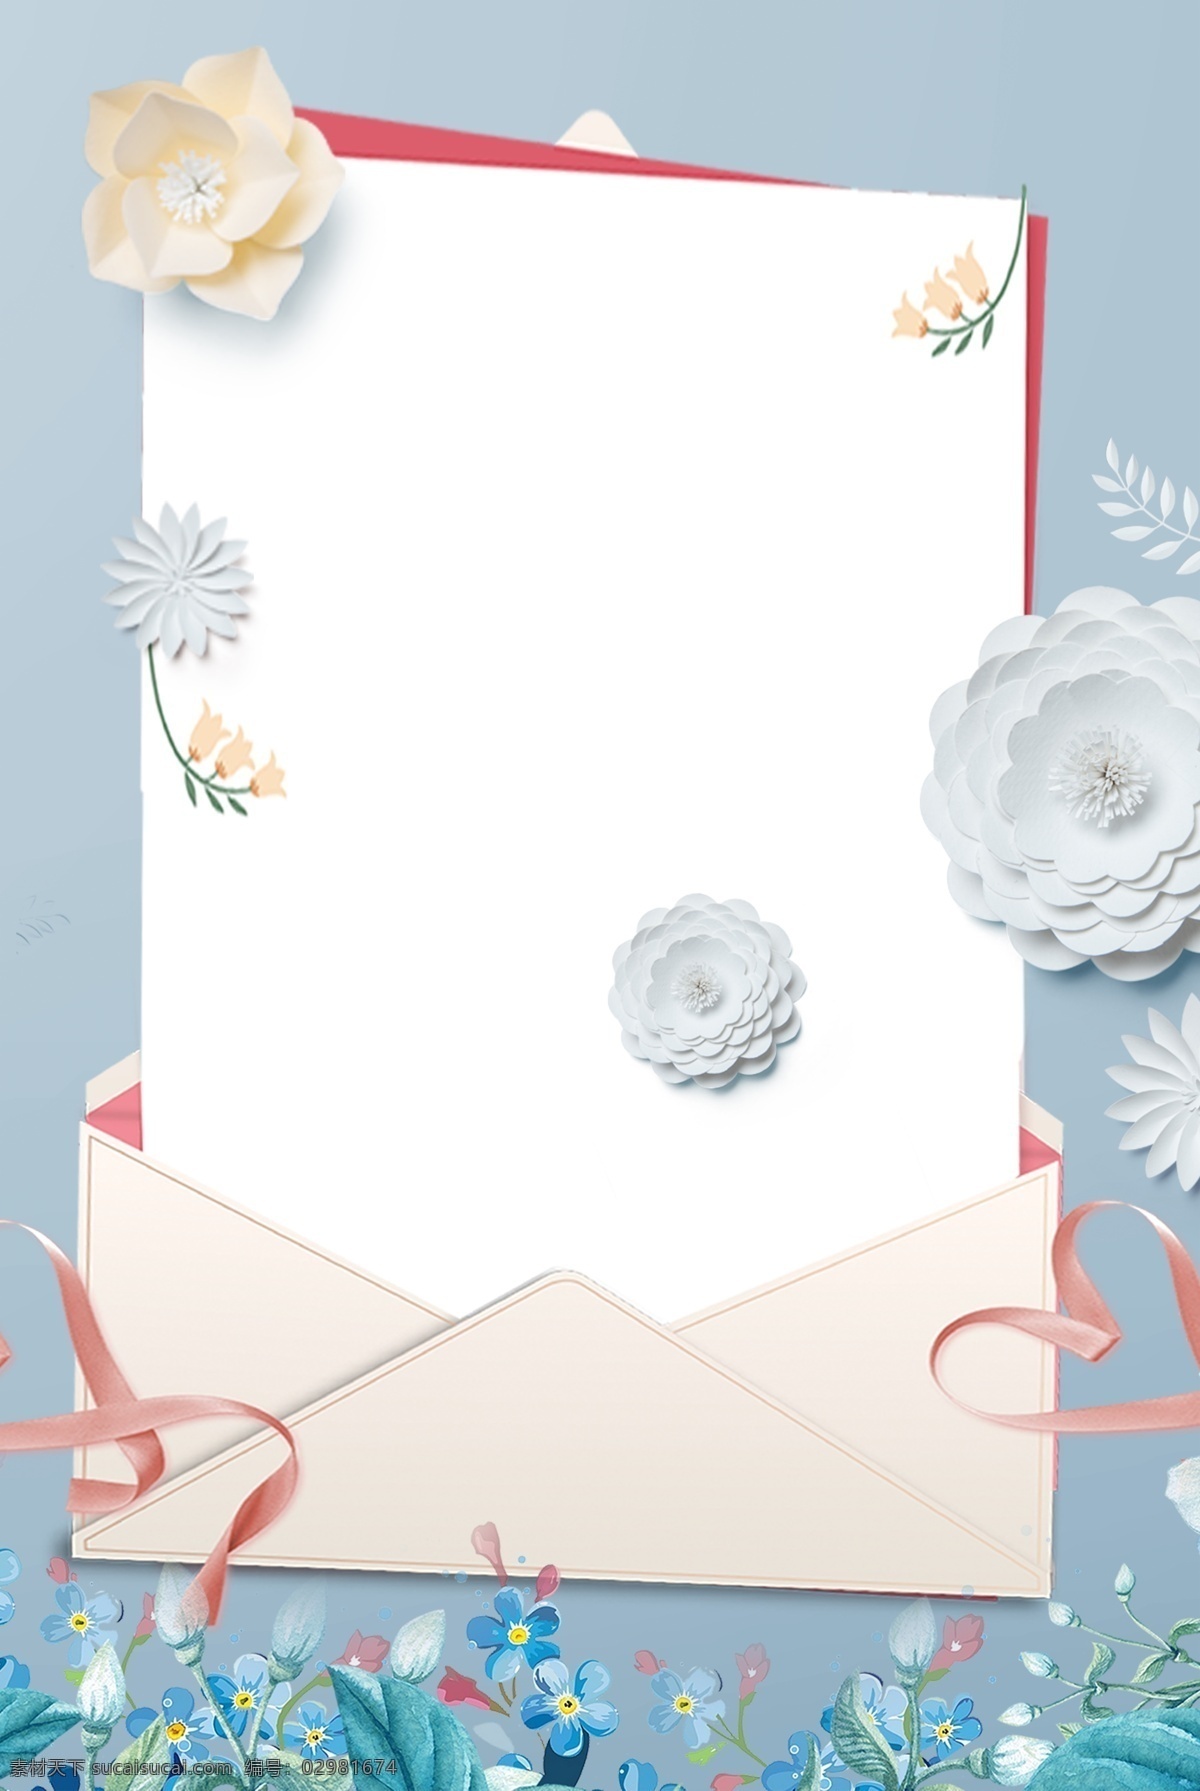 蓝色 淡雅 花朵 信封 背景 粉色 卡通 浪漫 甜美 可爱 清新 文艺 信件 贺卡